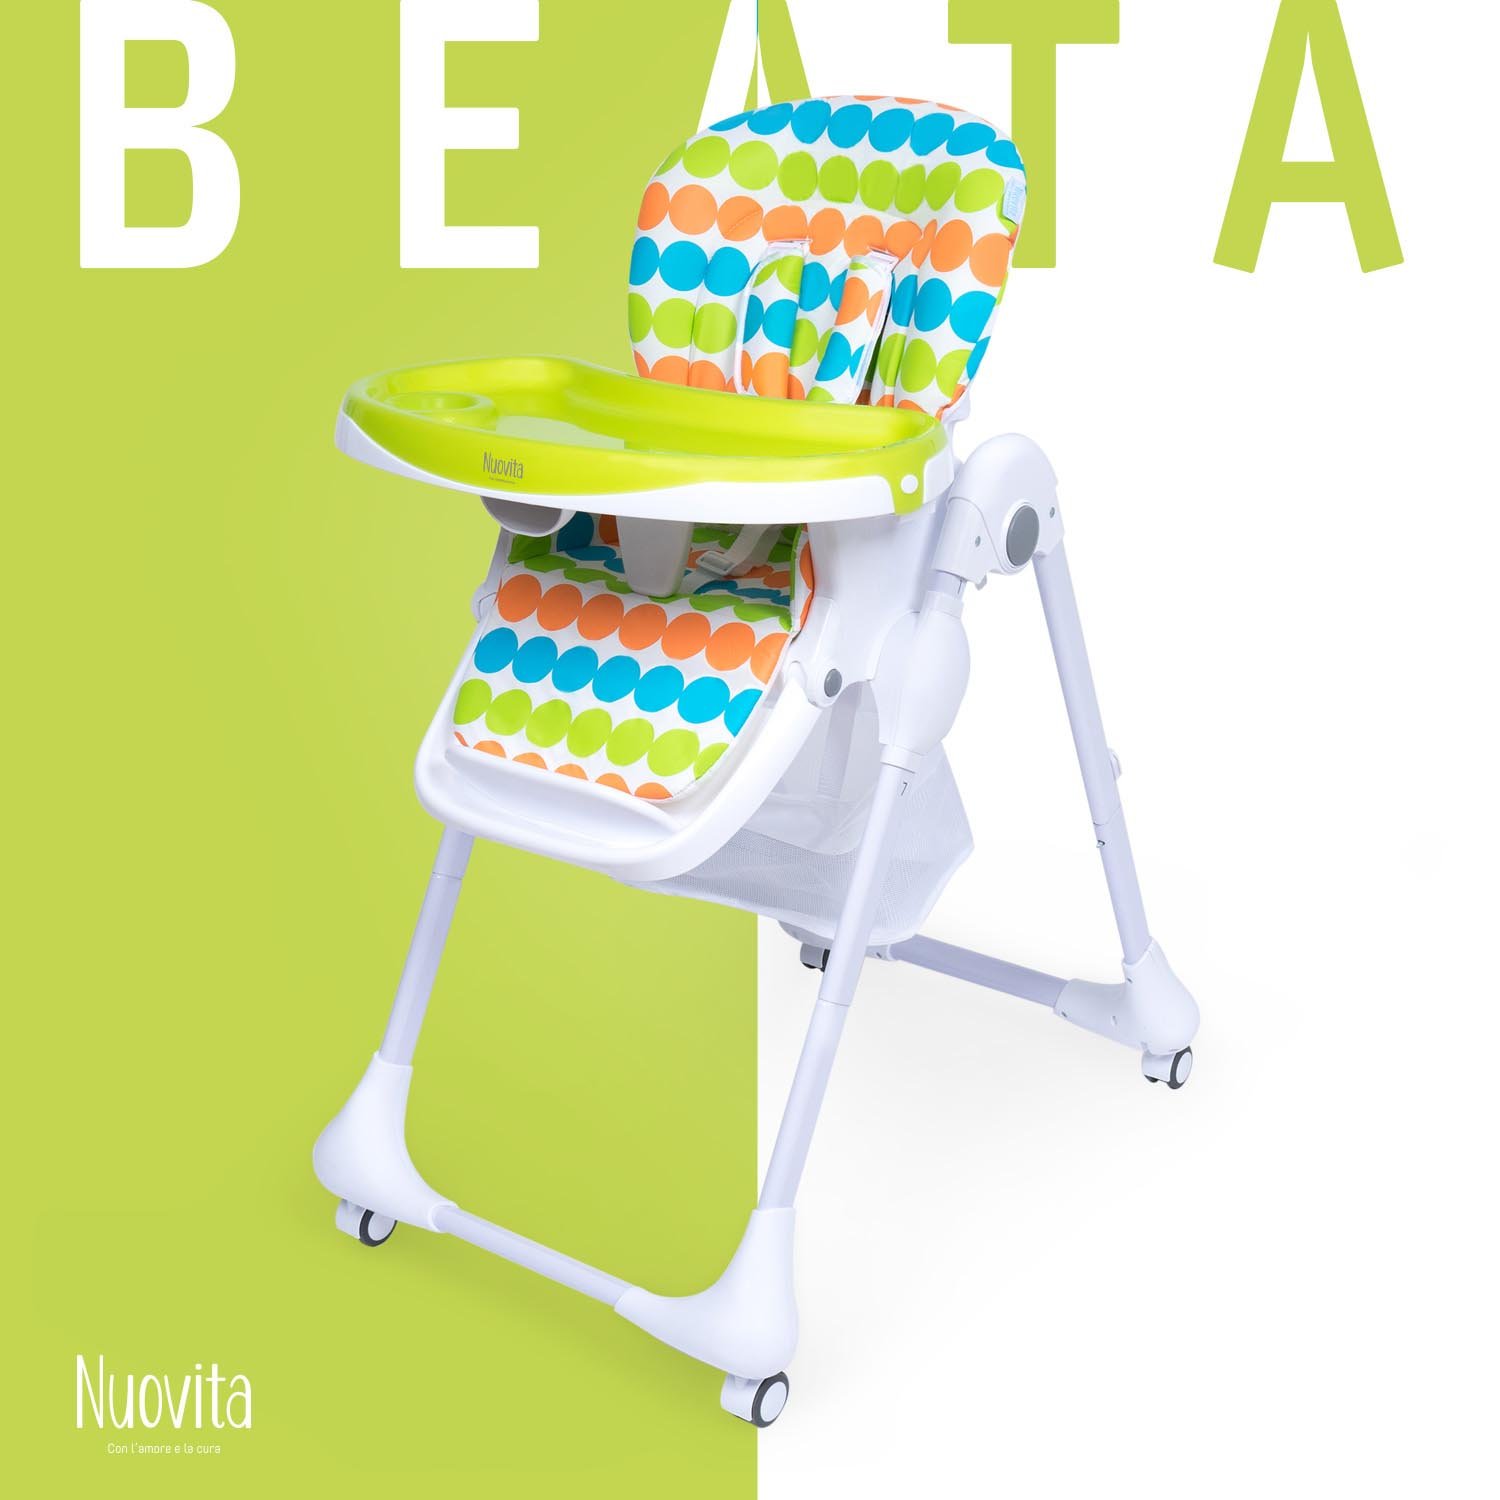 Стульчик для кормления Nuovita Beata Colori стульчик для кормления nuovita beata